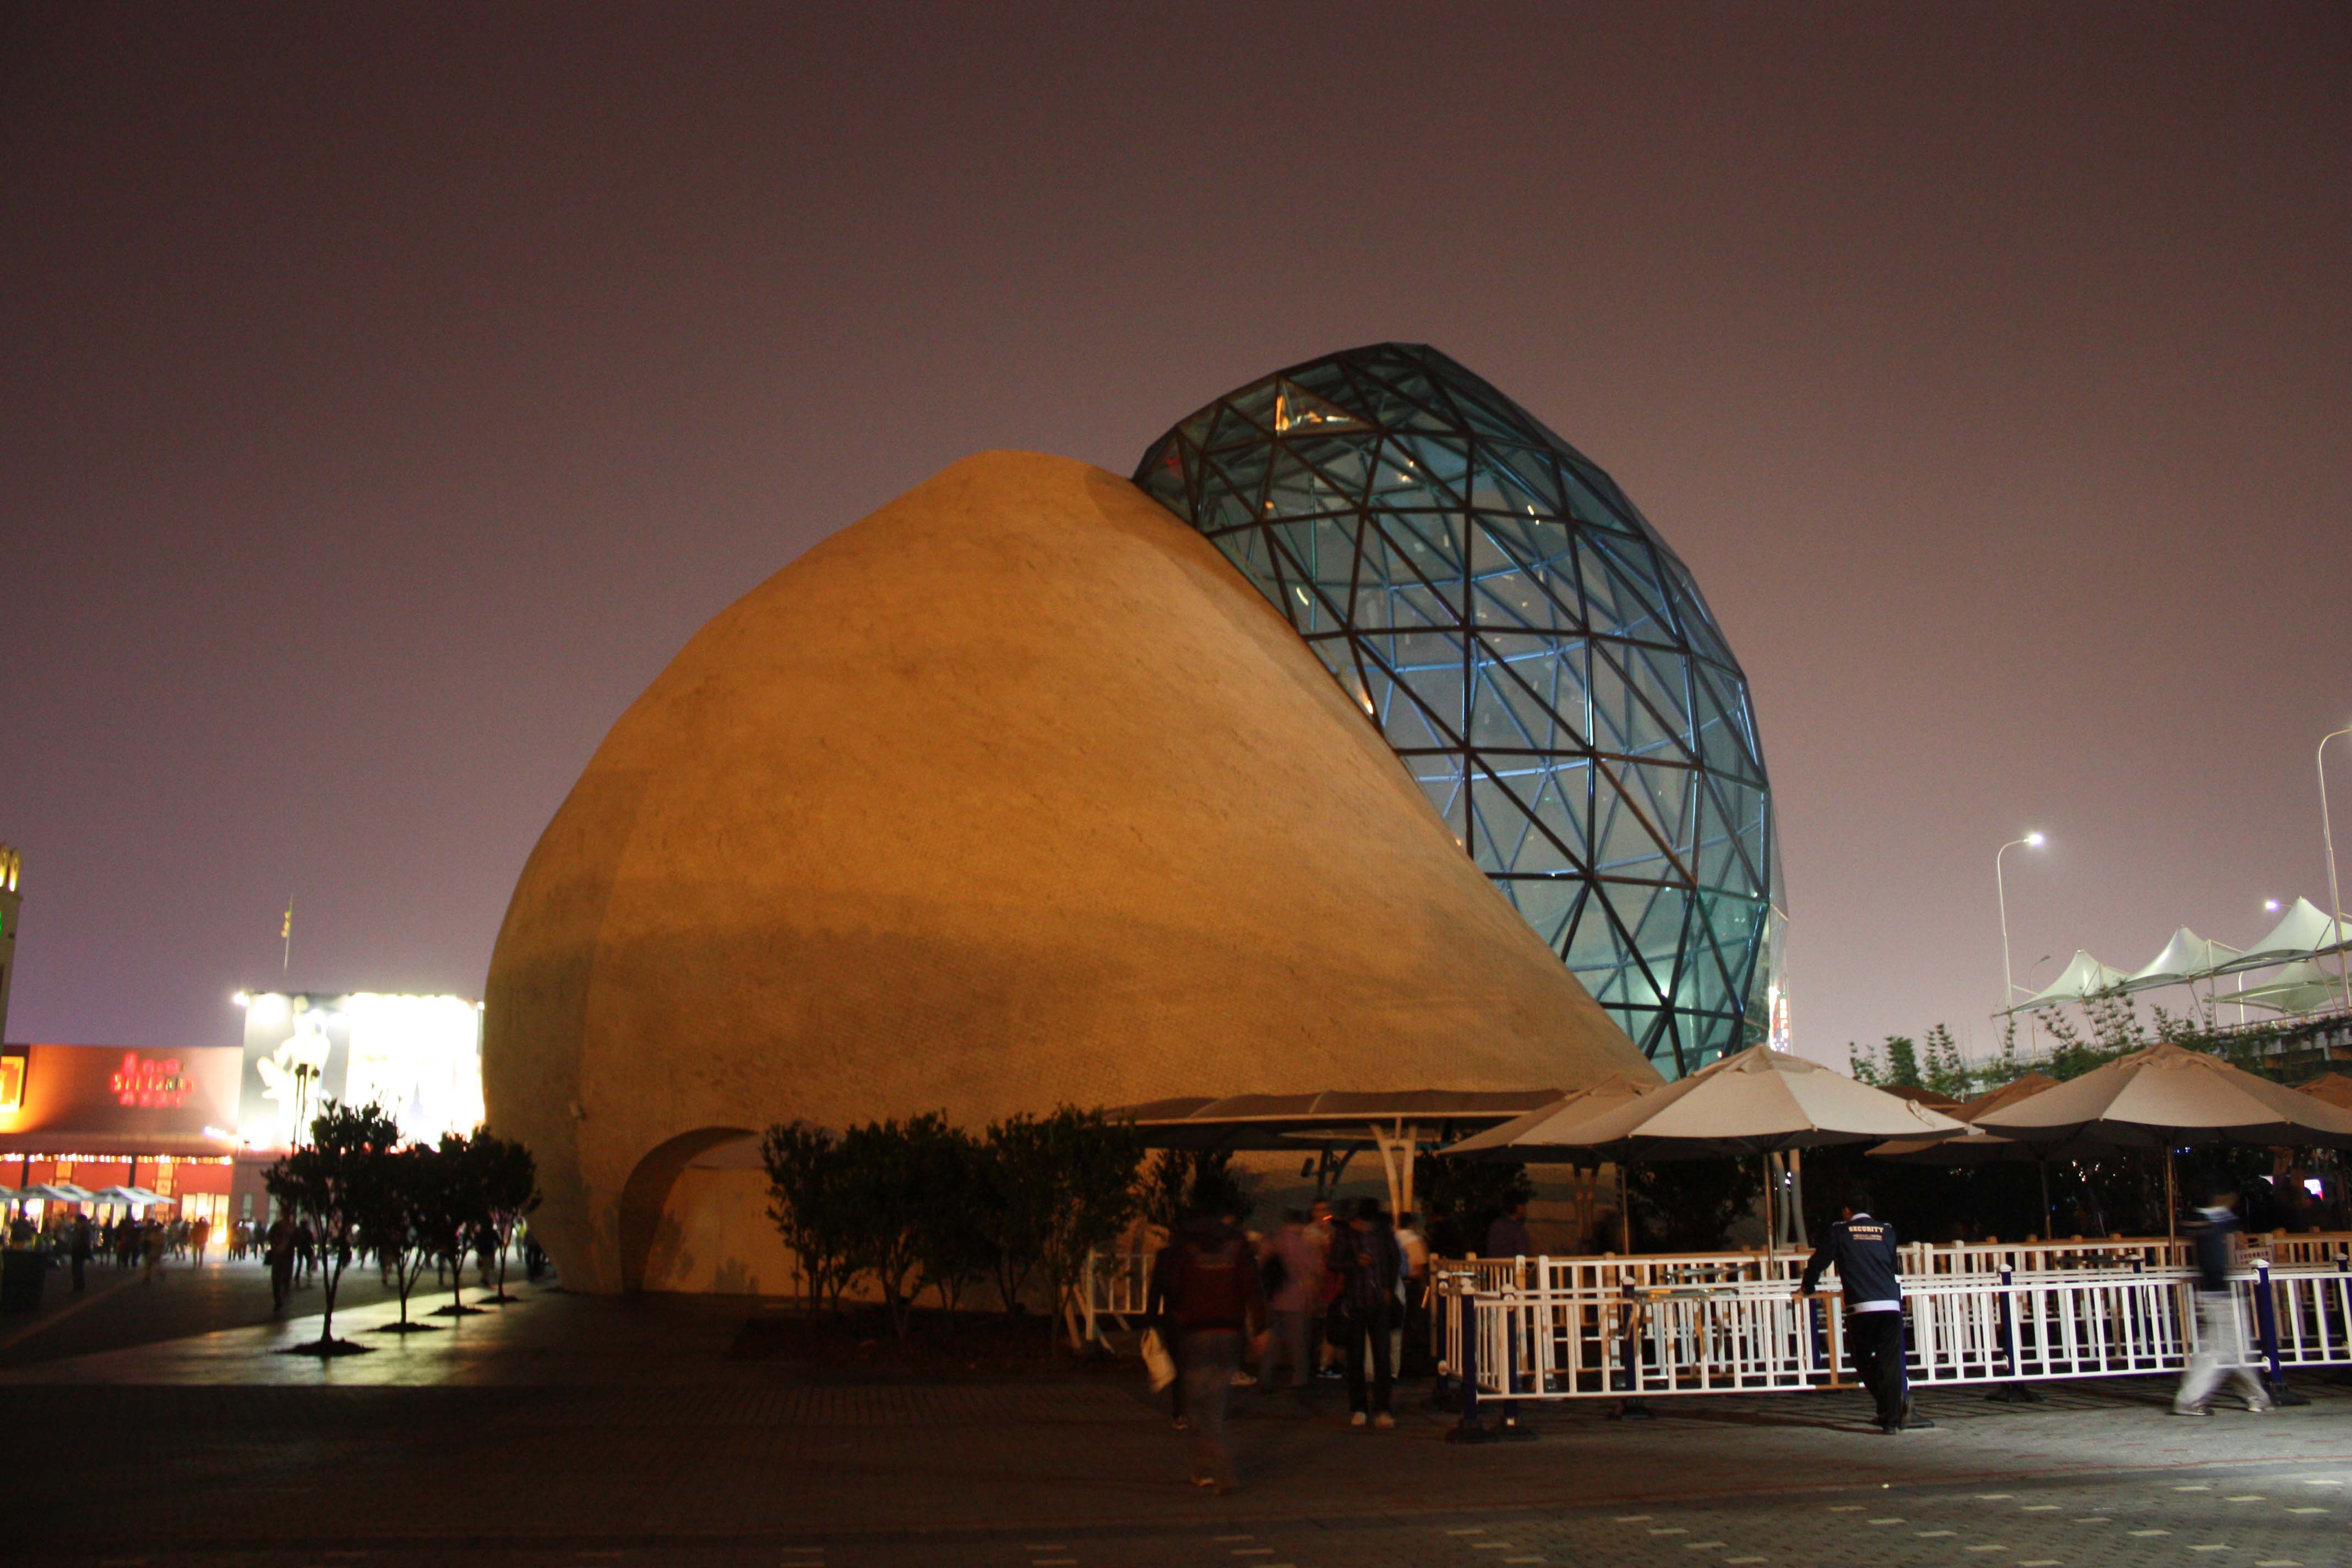 上海世博会以色列馆图片